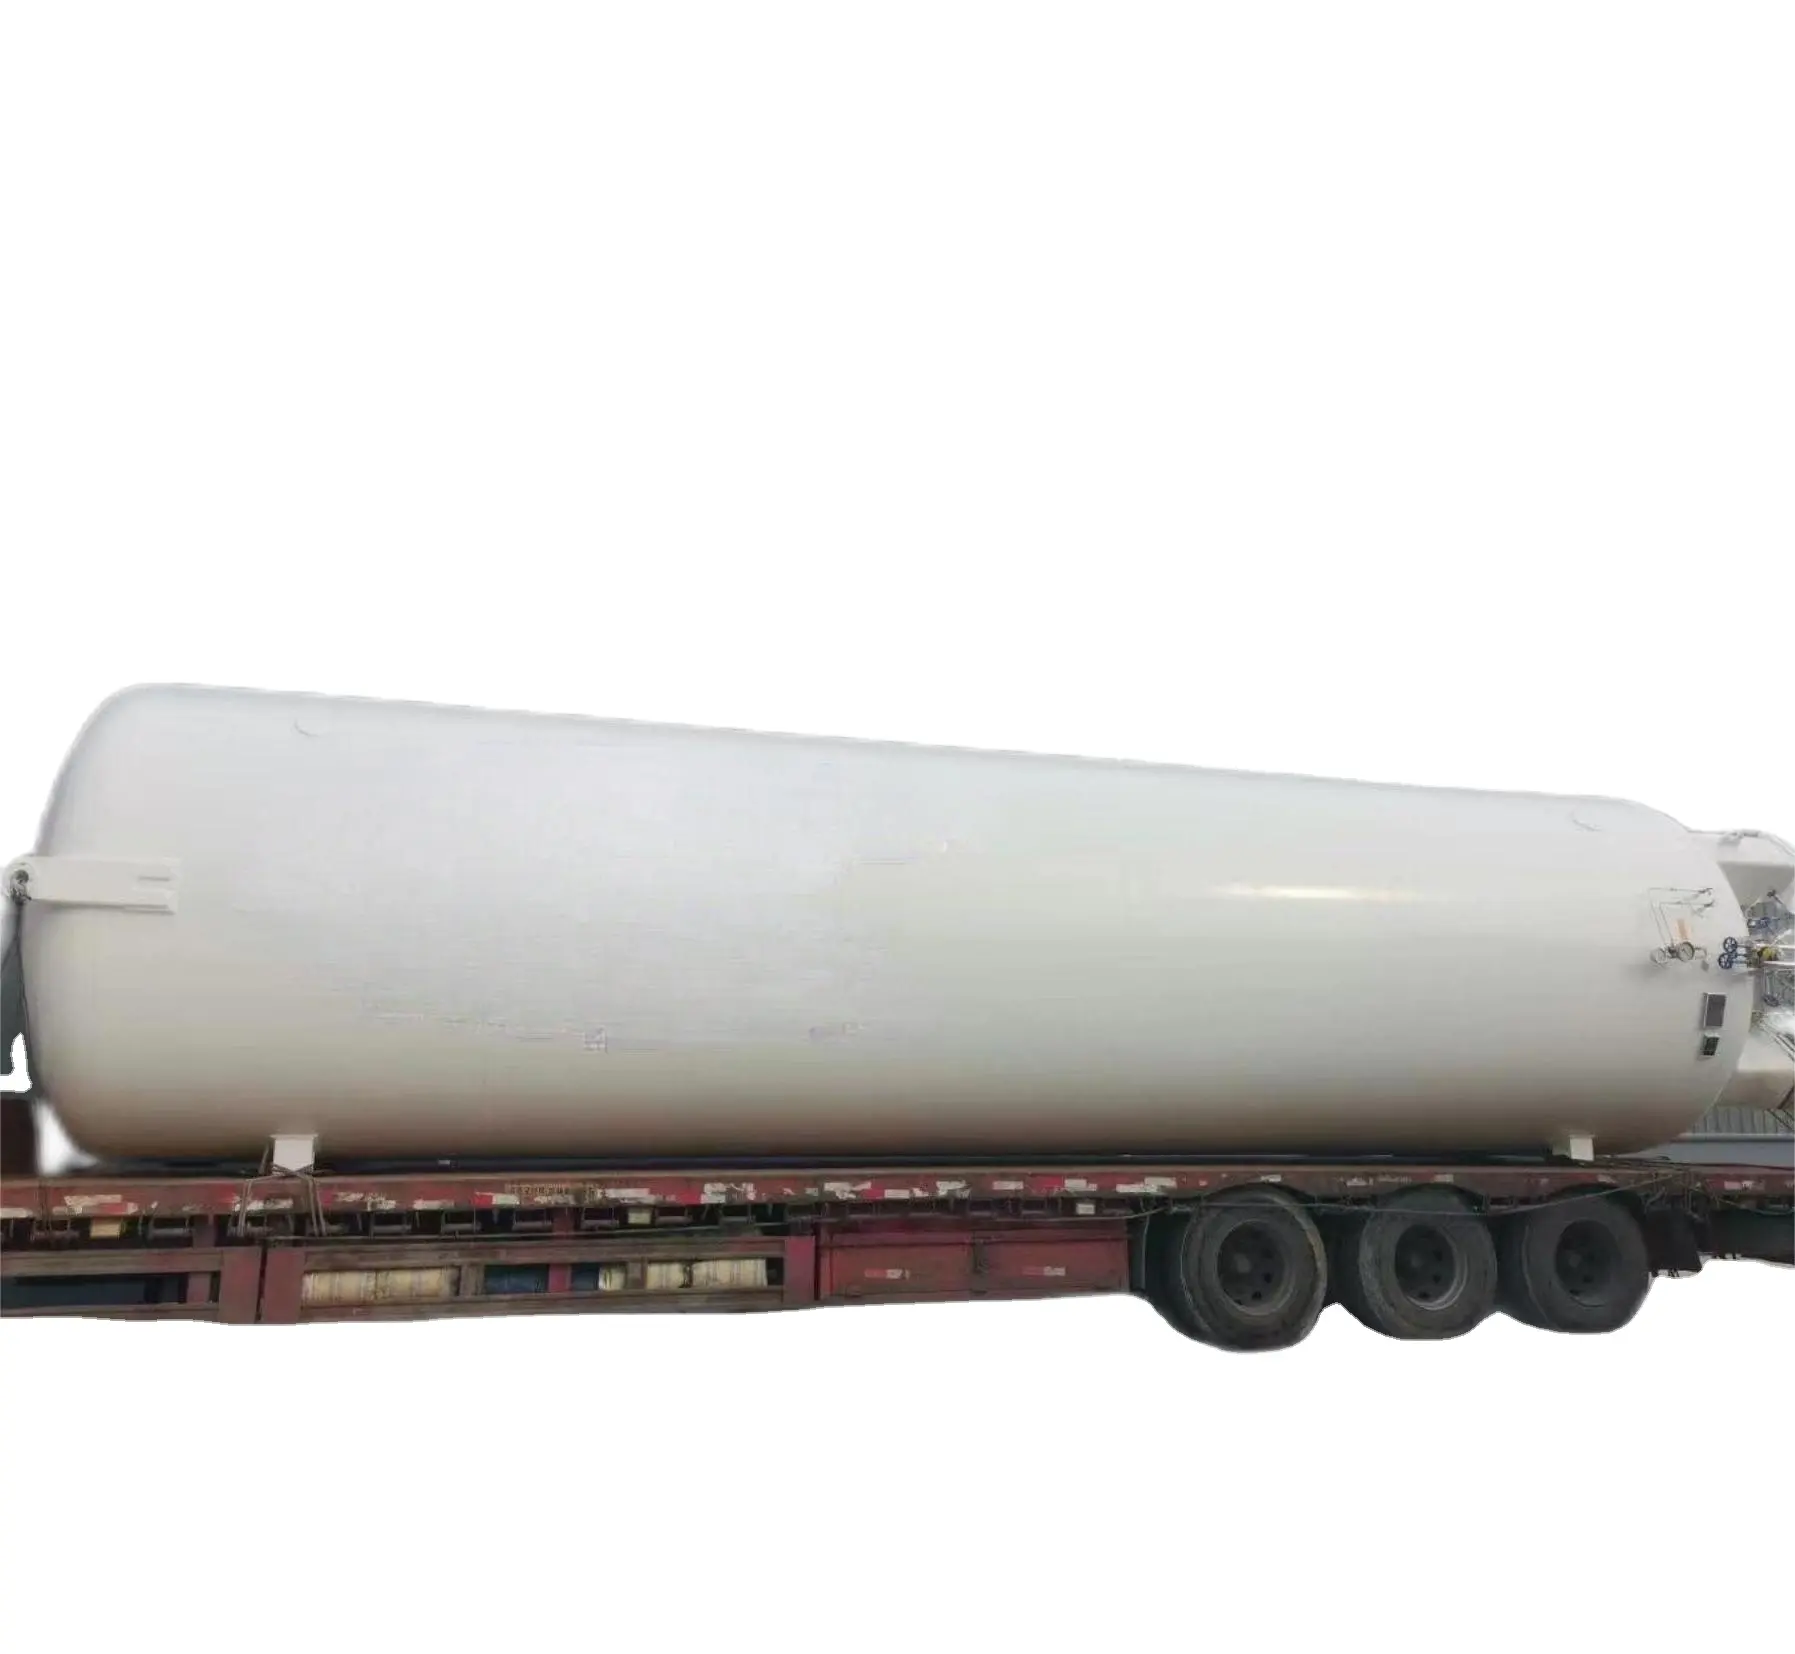 Tanque de armazenamento ZJTZ20-470 Lpg Tanque de gás de petróleo liquefeito Fabricante Tanque De Gás De Petróleo Liquefeito